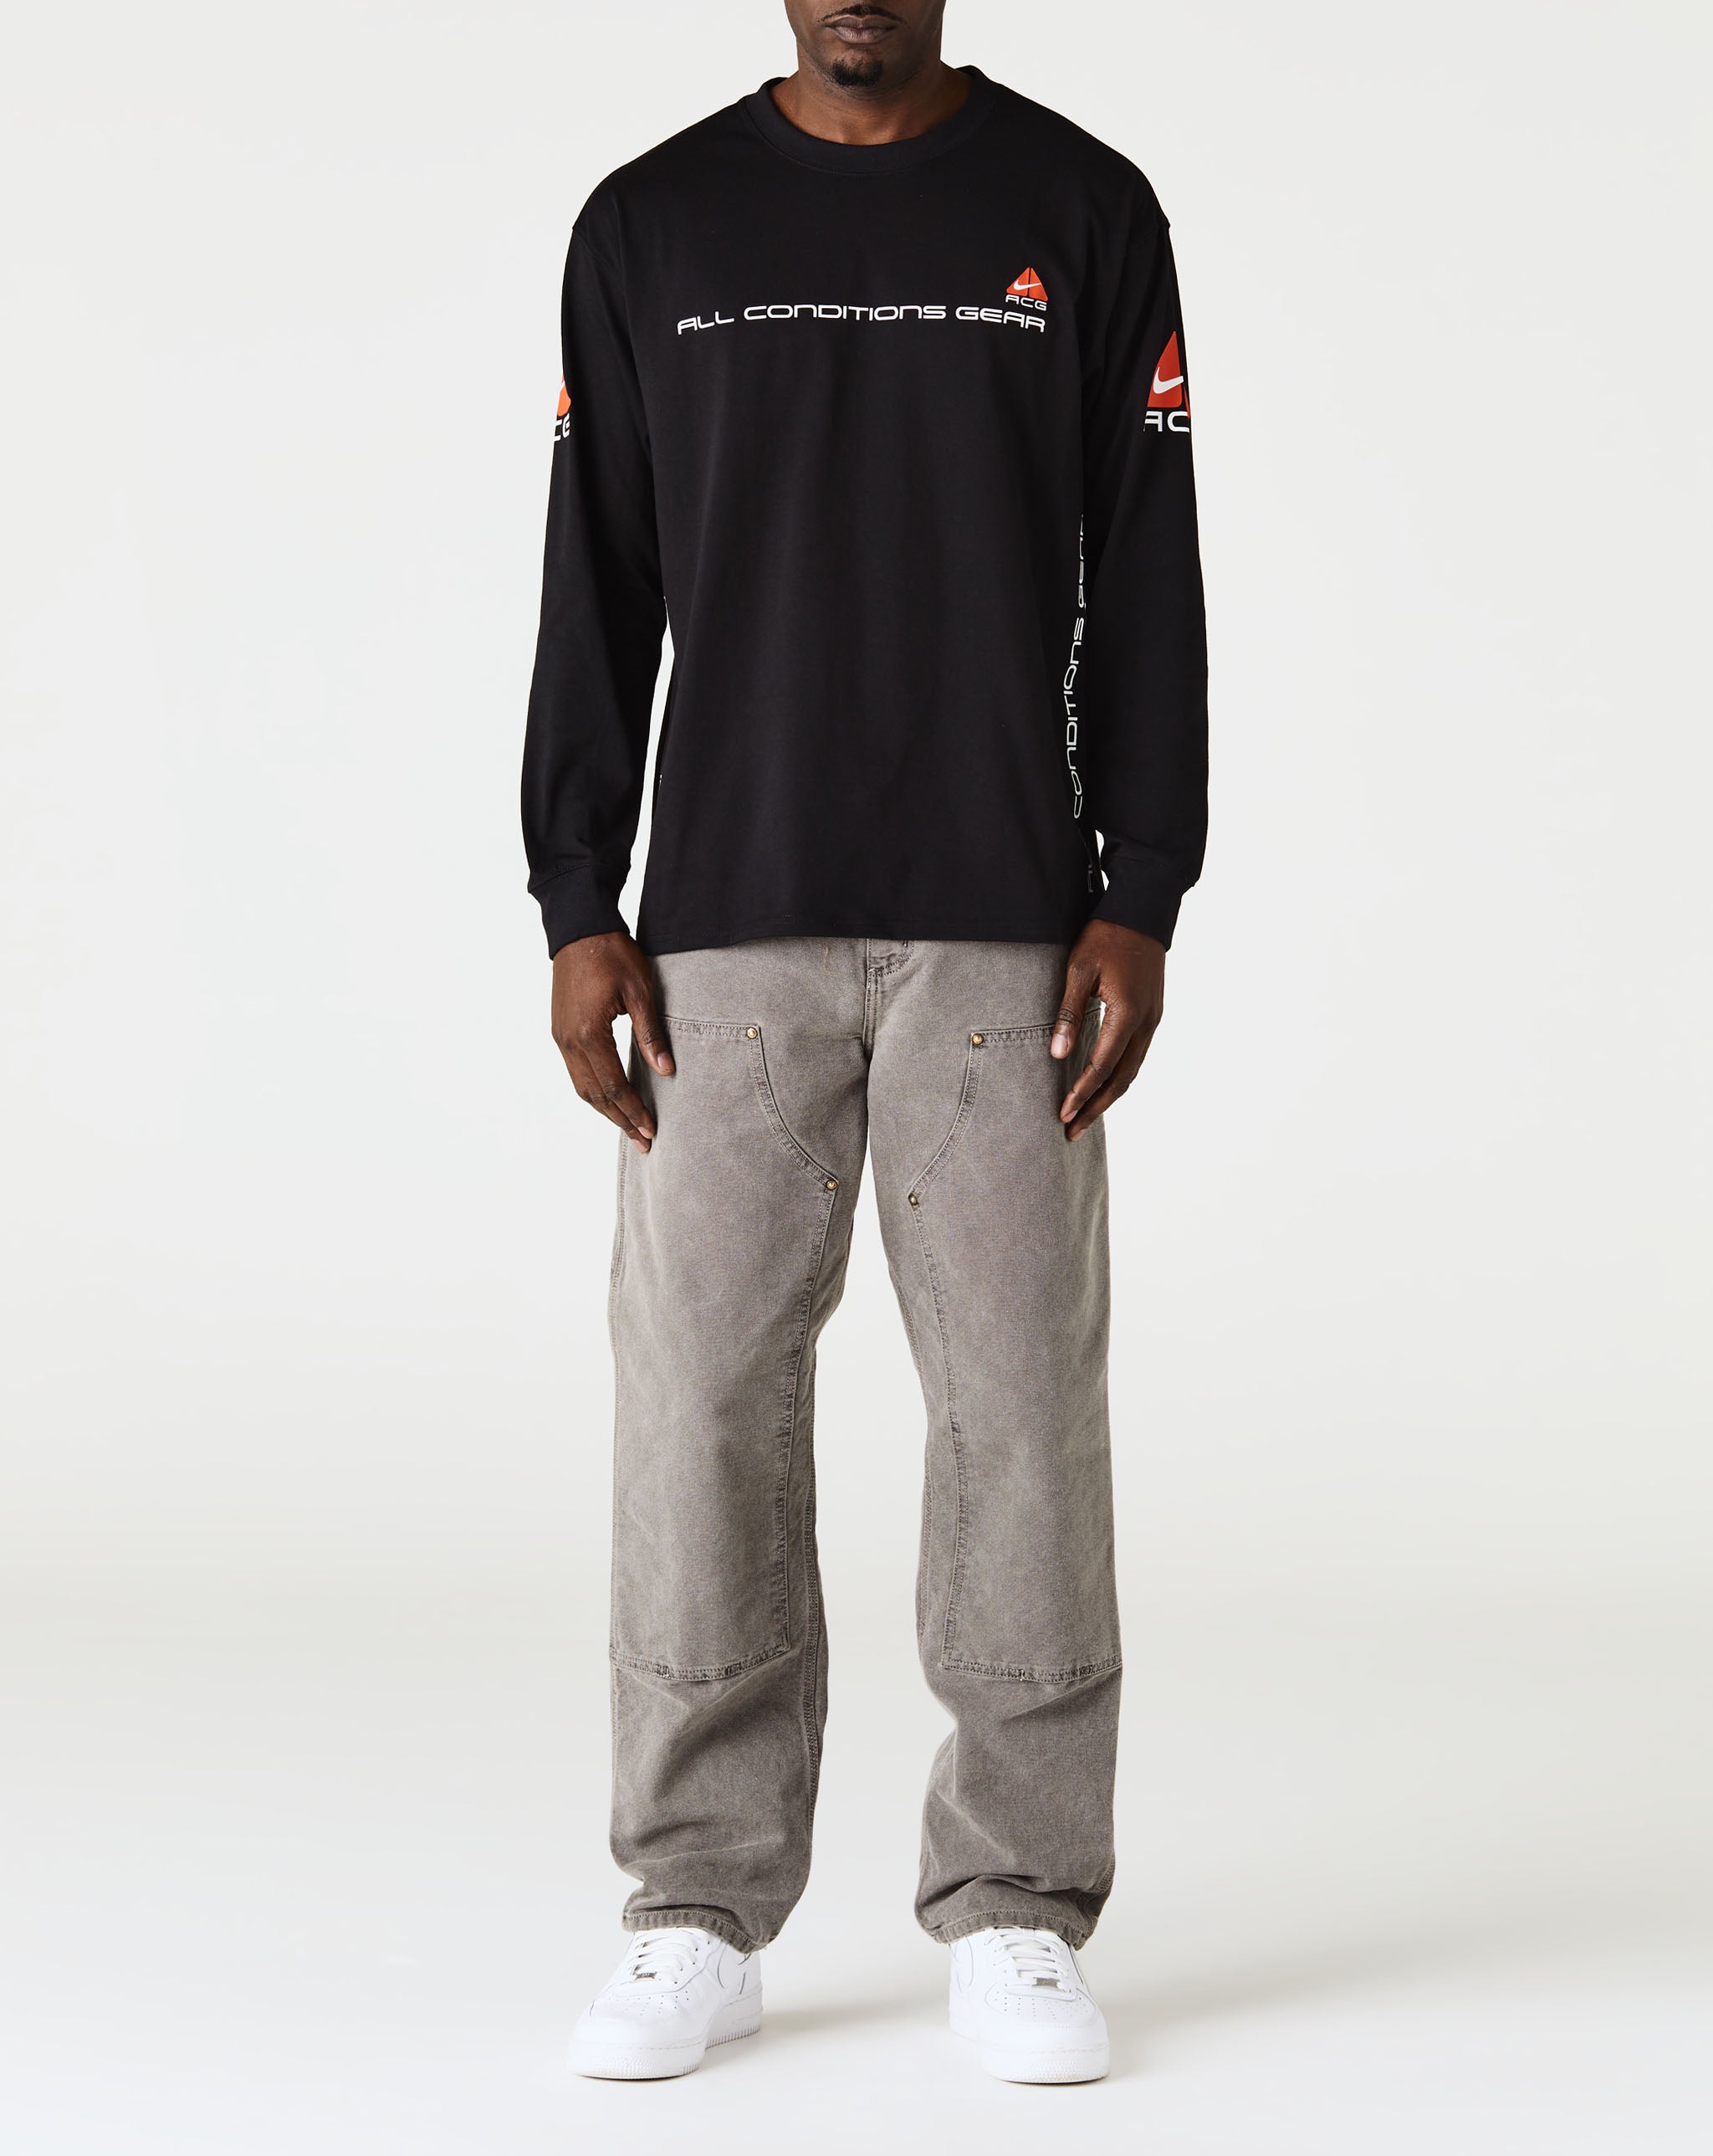 Nike ACG 'Lungs' Long-Sleeve T-Shirt  - Cheap Urlfreeze Jordan outlet